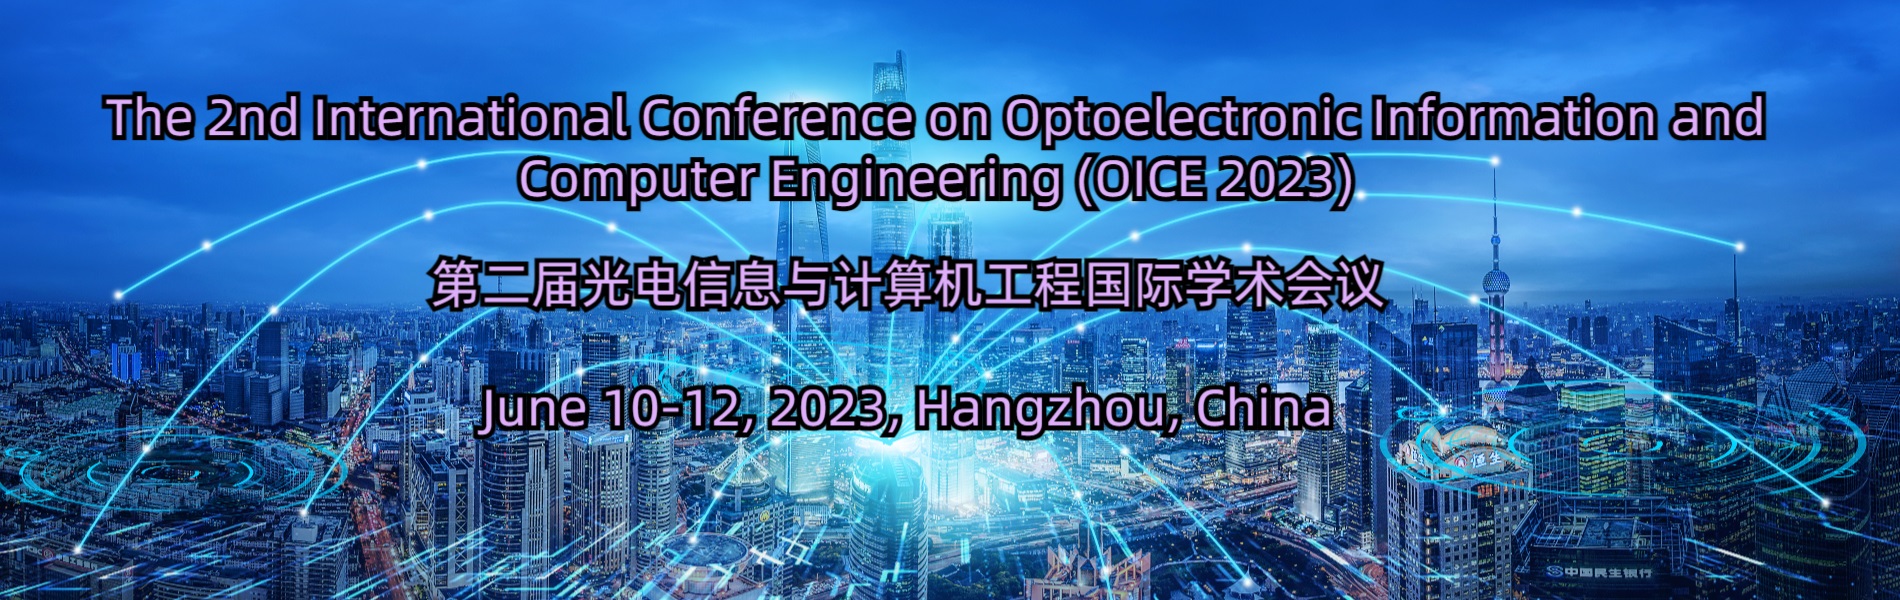 光电信息与计算机工程国际学术会议(OICE 2023)